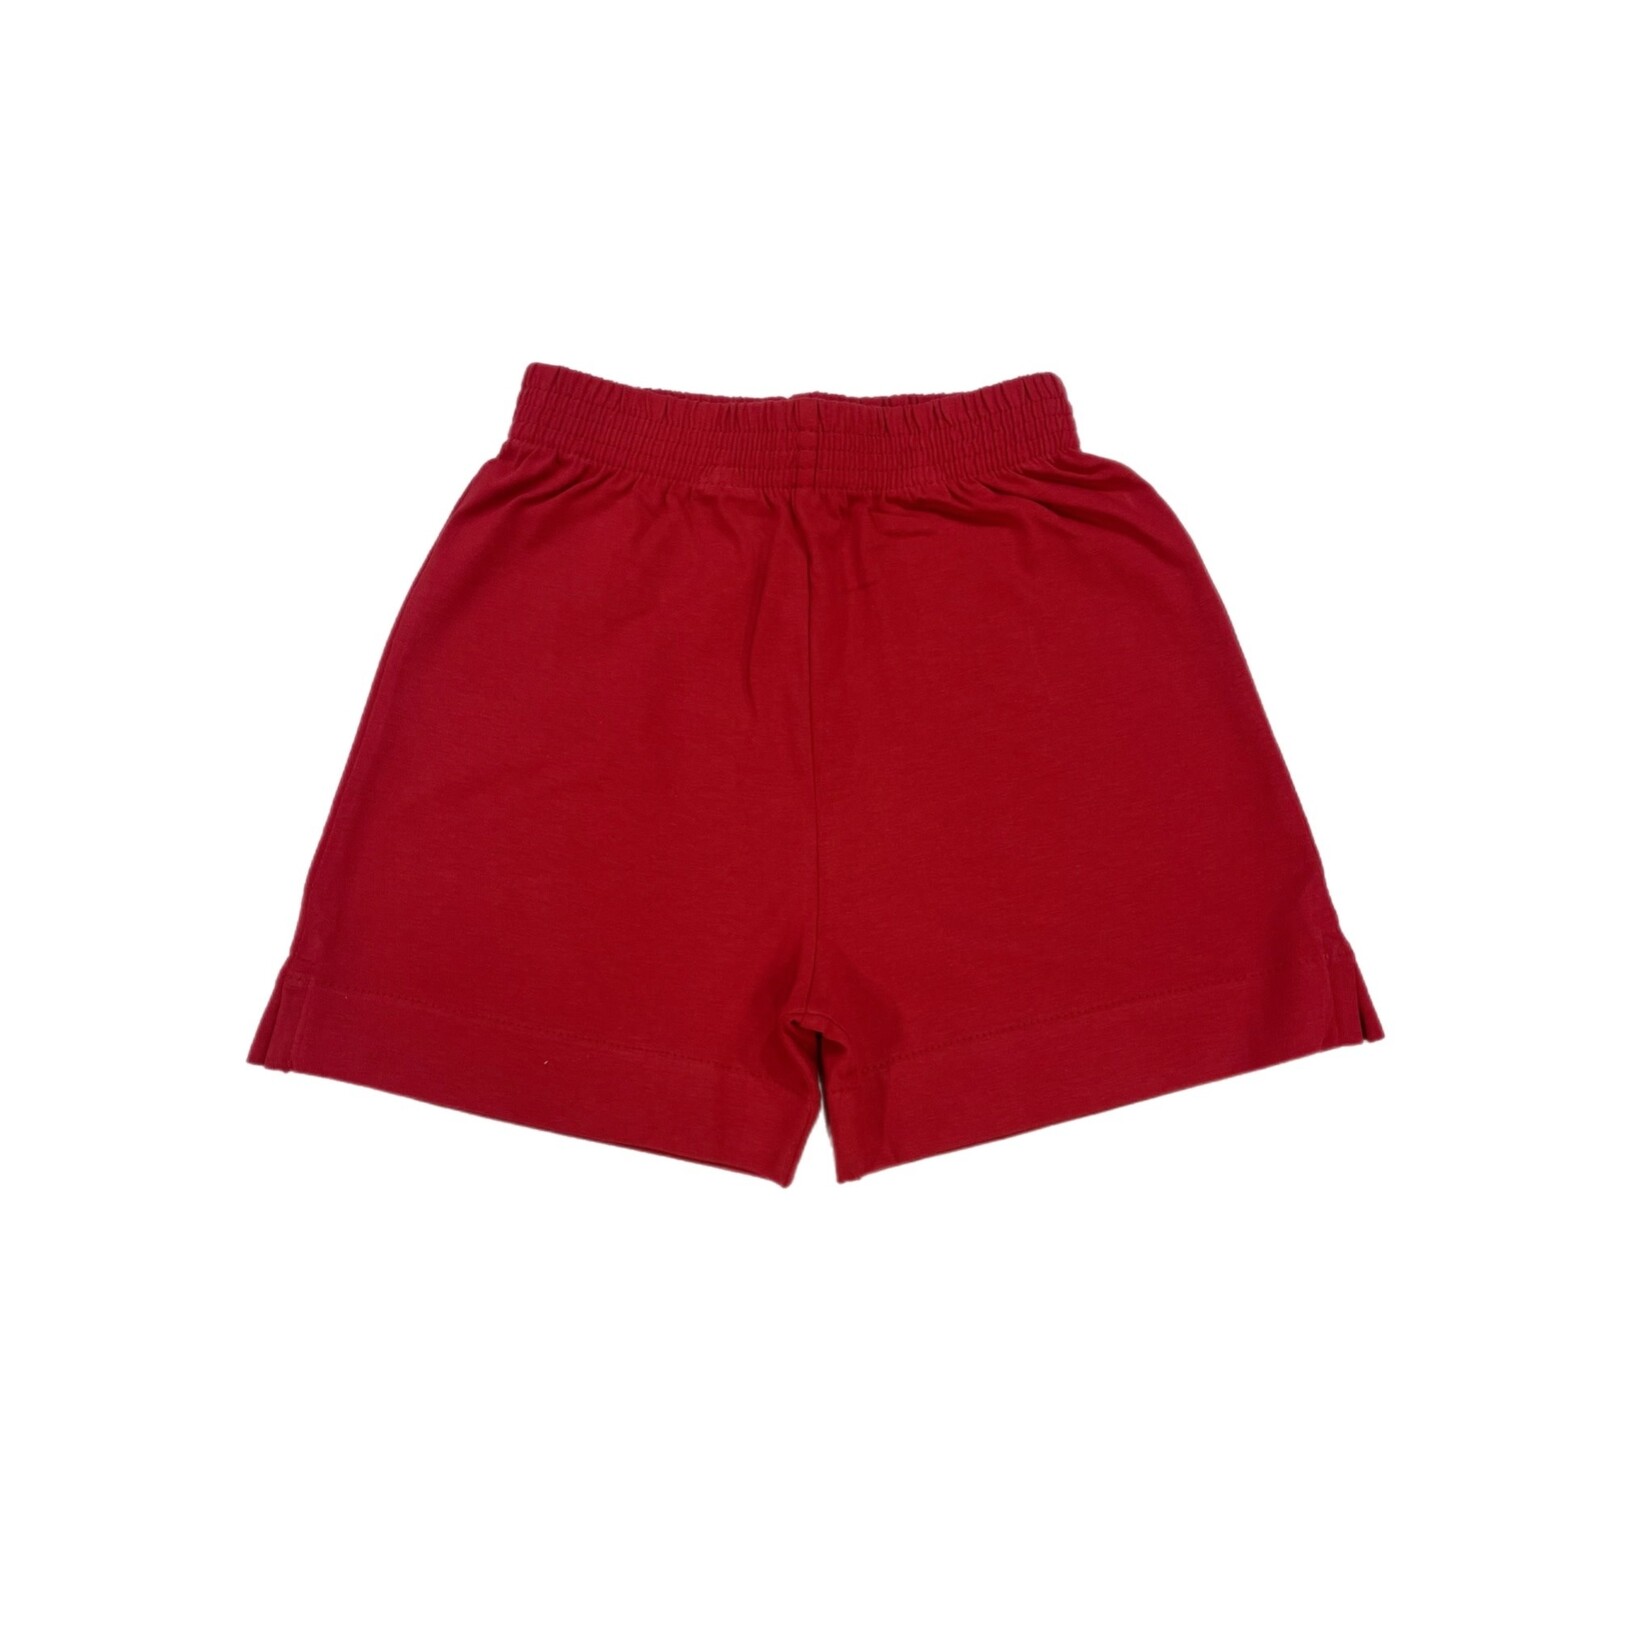 Luigi Kids Deep Red Knit Shorts